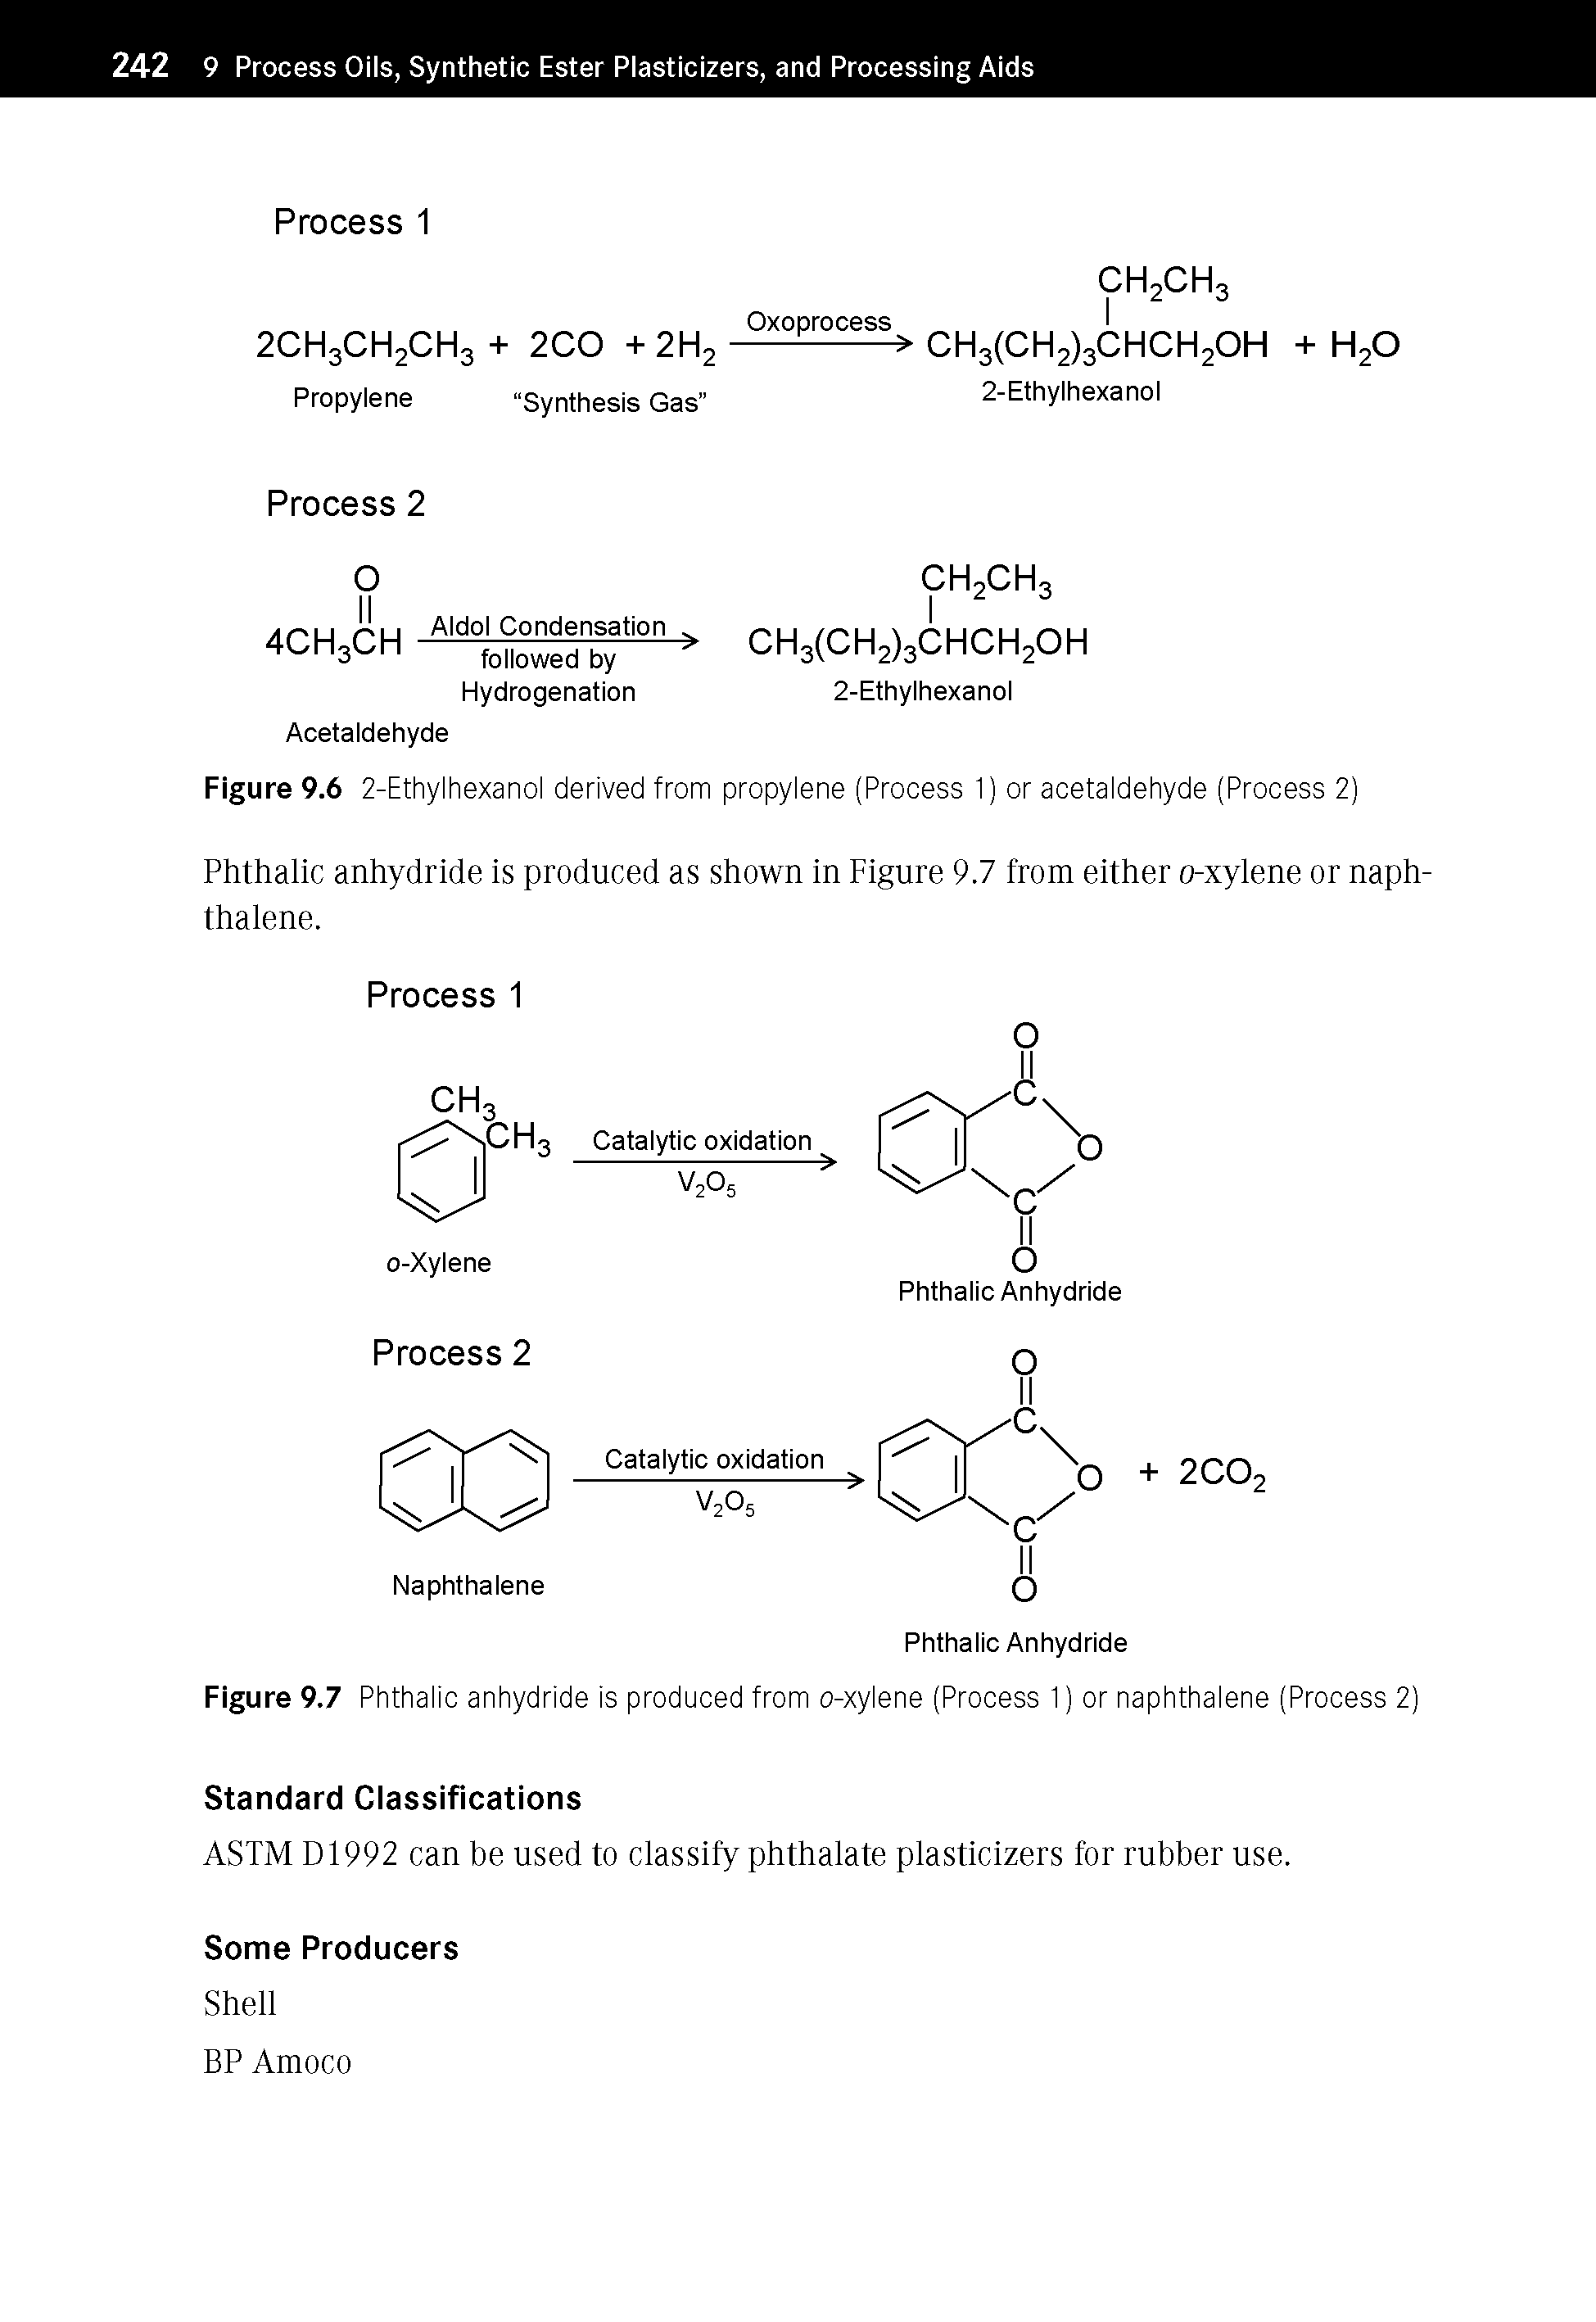 Figure 9.6 2-Ethylhexanol derived from propylene (Process 1) or acetaldehyde (Process 2)...